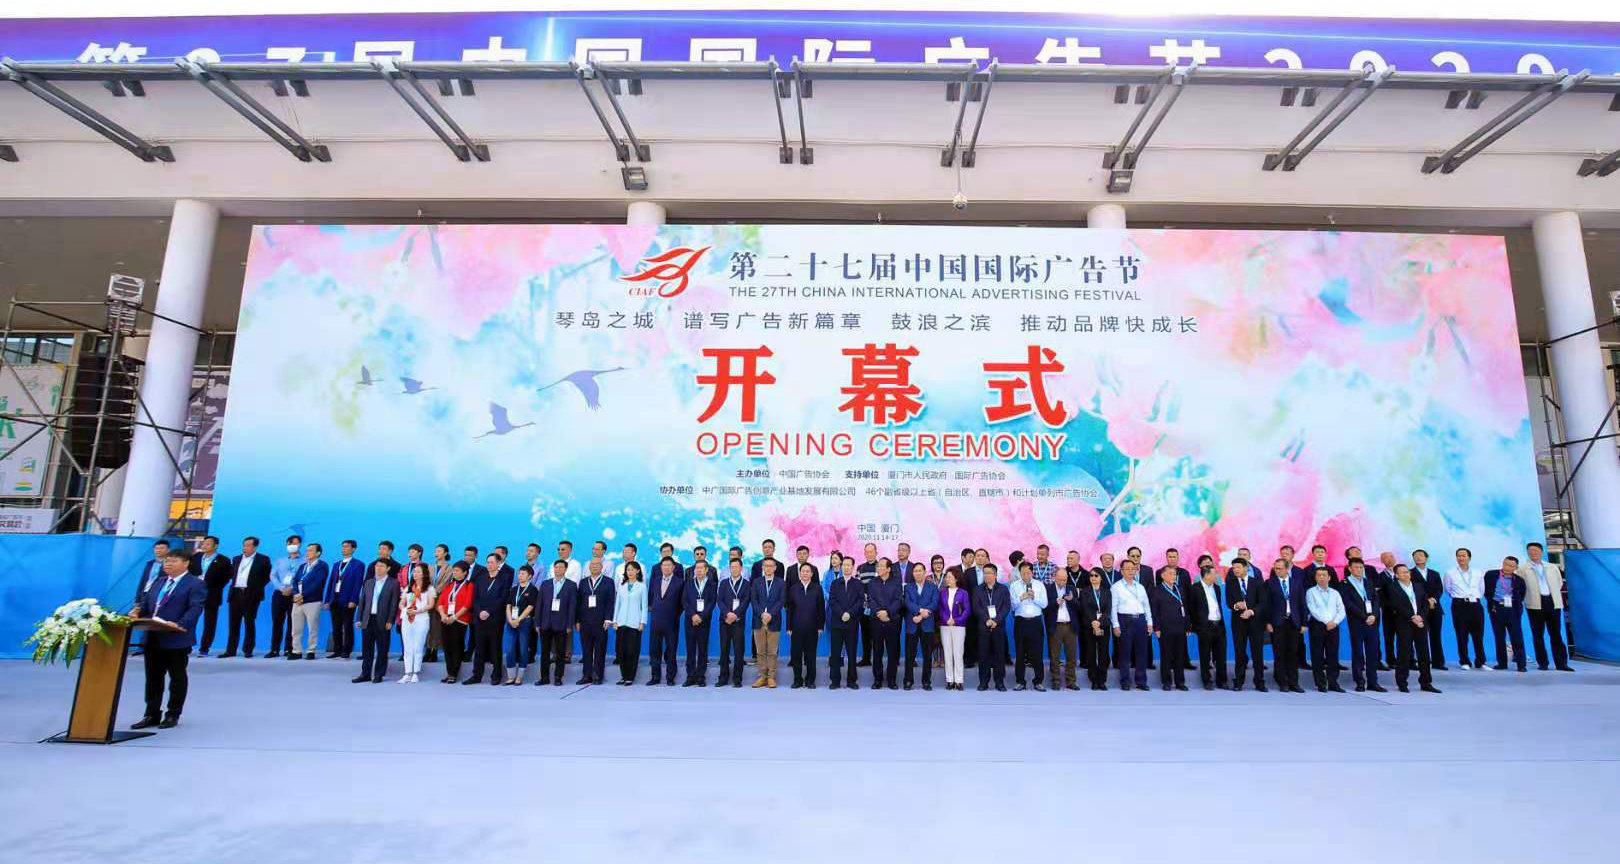 琴島之城，譜寫廣告新篇章；鼓浪之濱，推動品牌快成長第27屆中國國際廣告節在廈門開幕